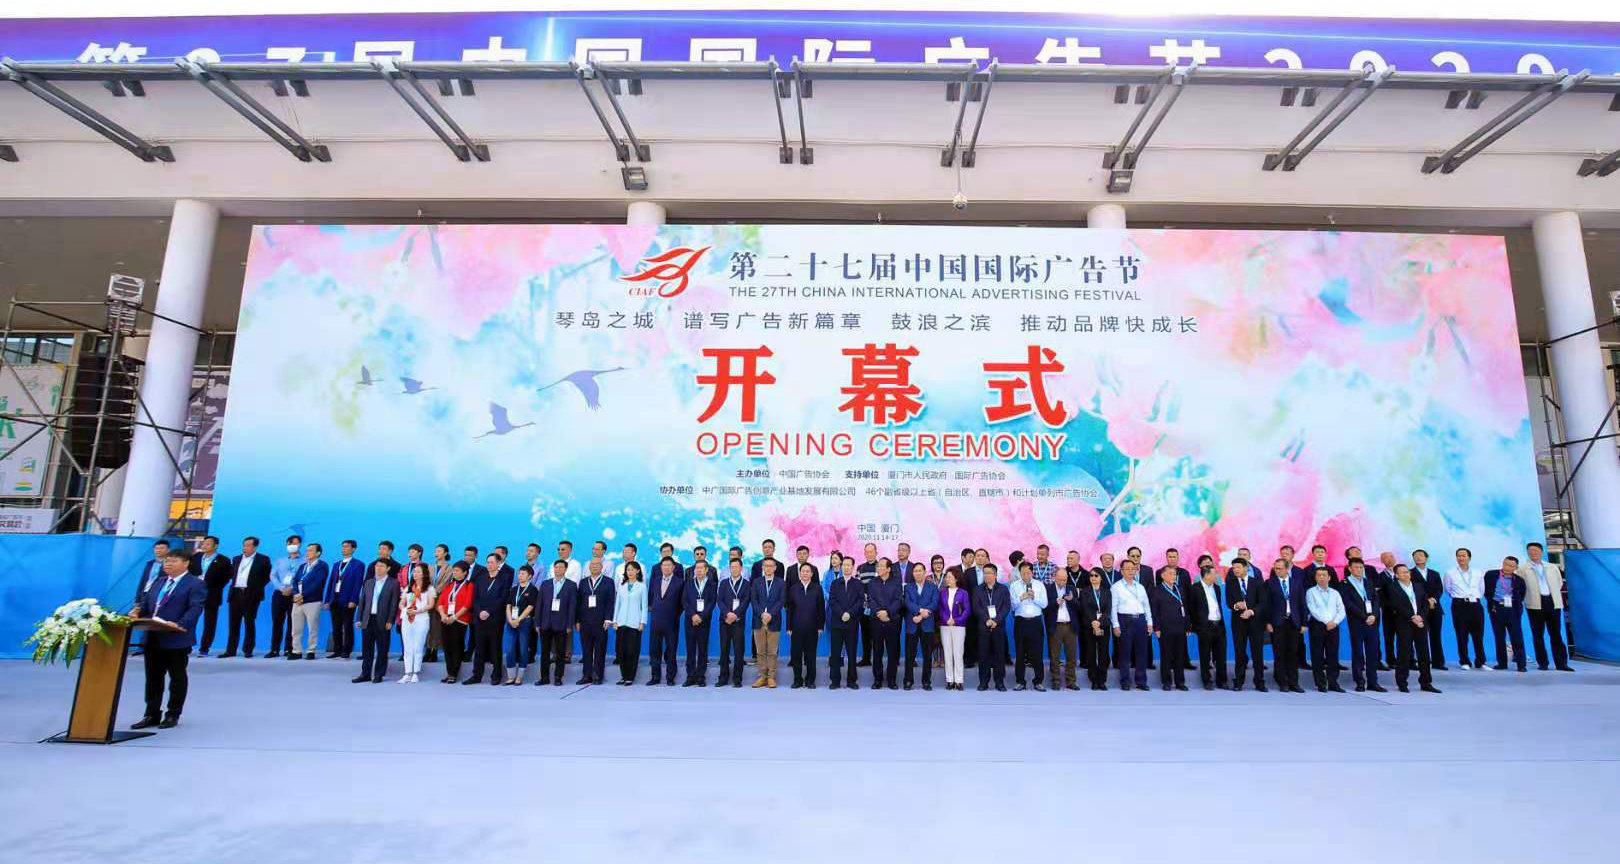 琴島之城，譜寫廣告新篇章；鼓浪之濱，推動品牌快成長第27屆中國國際廣告節在廈門開幕